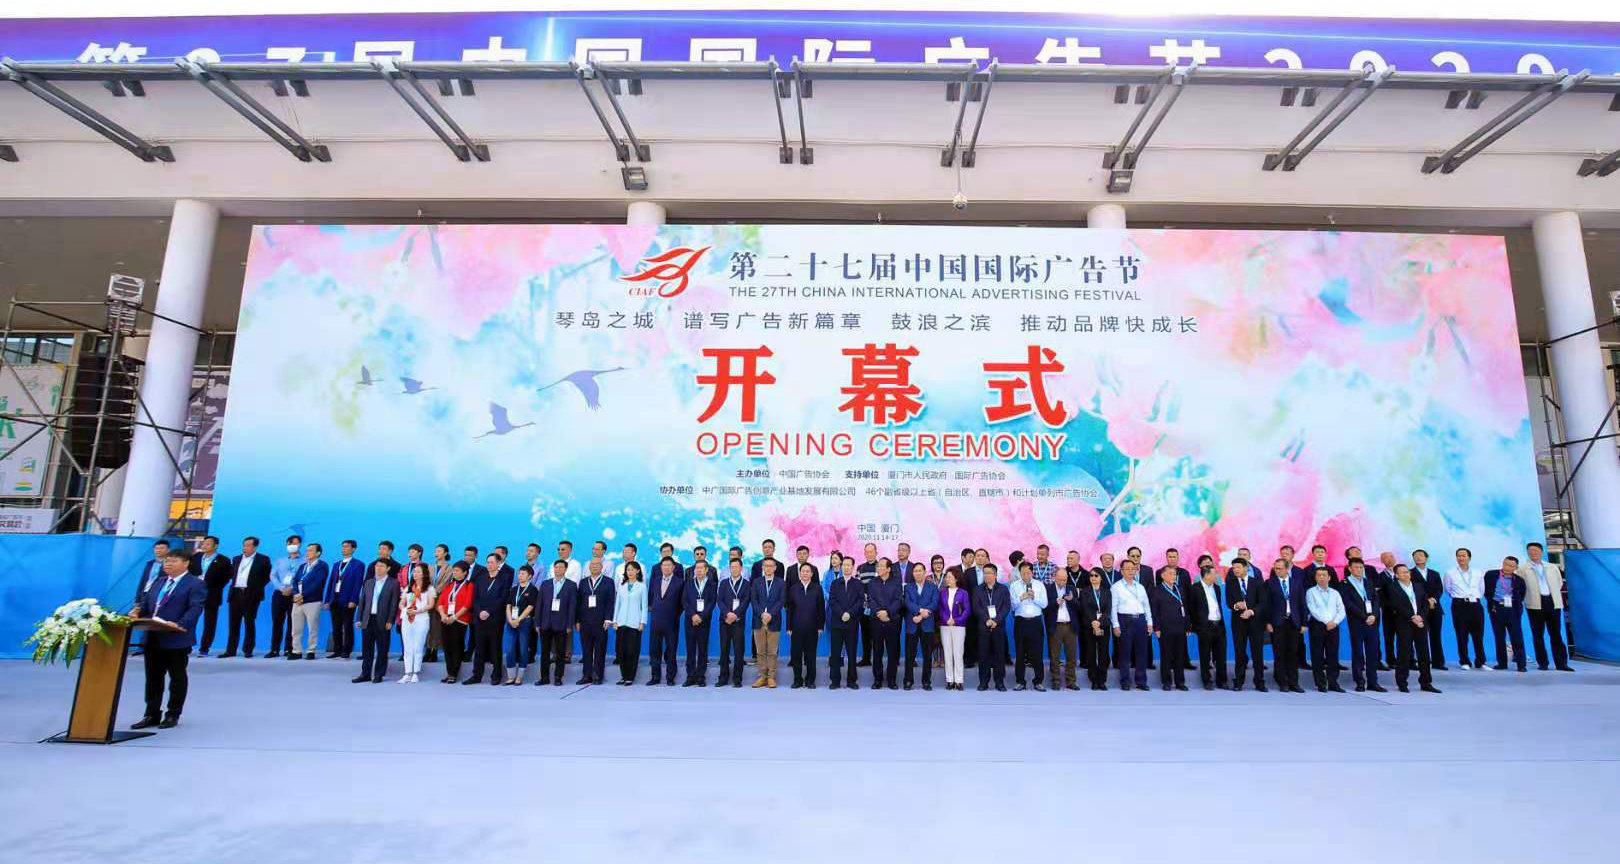 琴島之城，譜寫廣告新篇章；鼓浪之濱，推動品牌快成長第27屆中國國際廣告節在廈門開幕